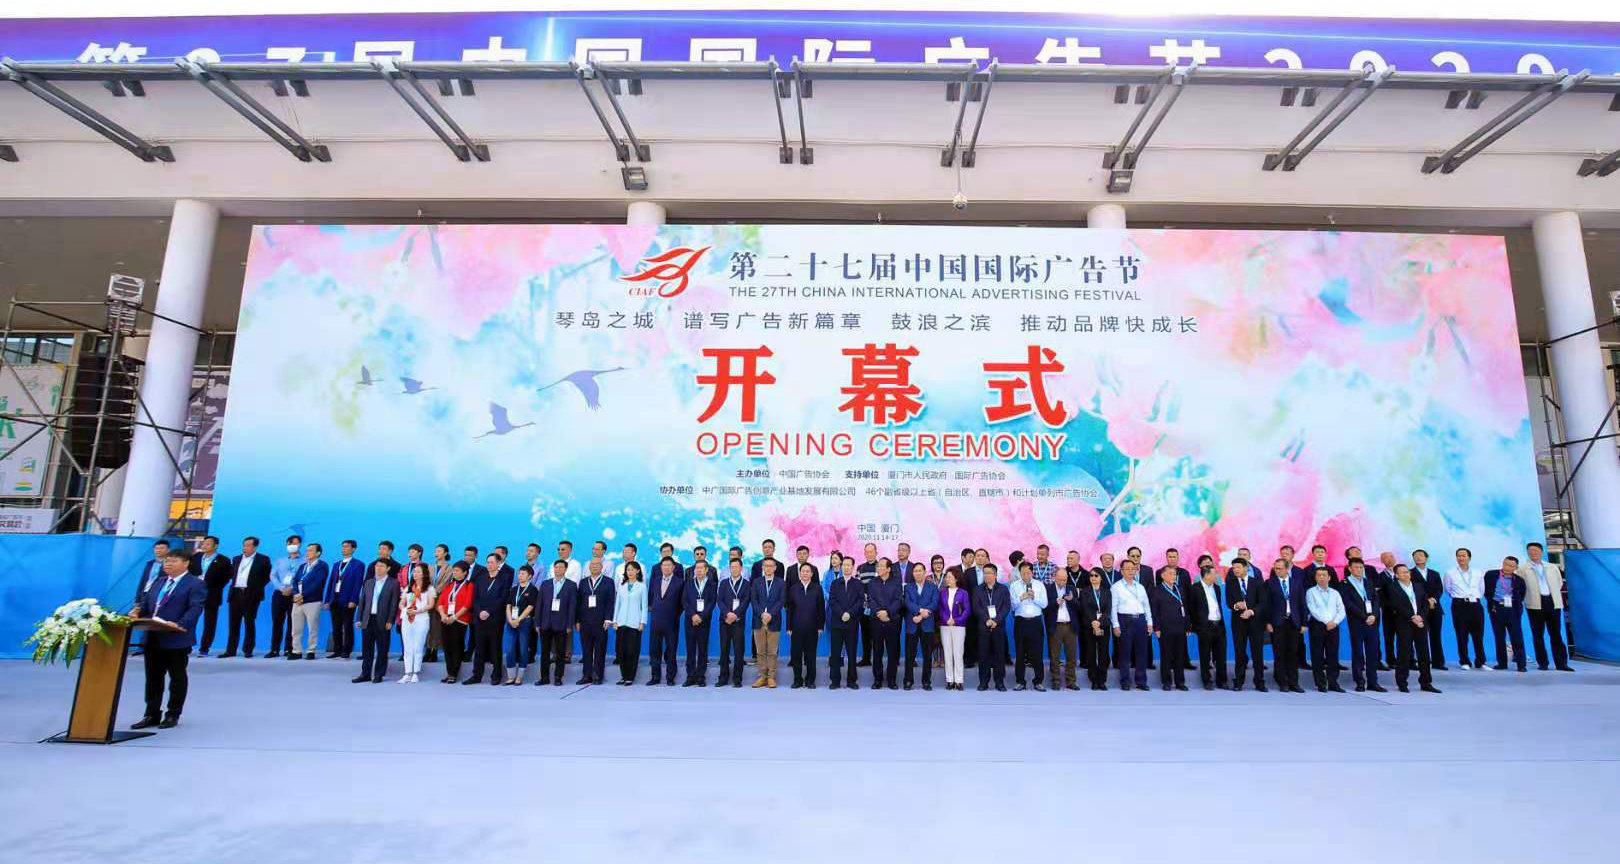 琴島之城，譜寫廣告新篇章；鼓浪之濱，推動品牌快成長第27屆中國國際廣告節在廈門開幕